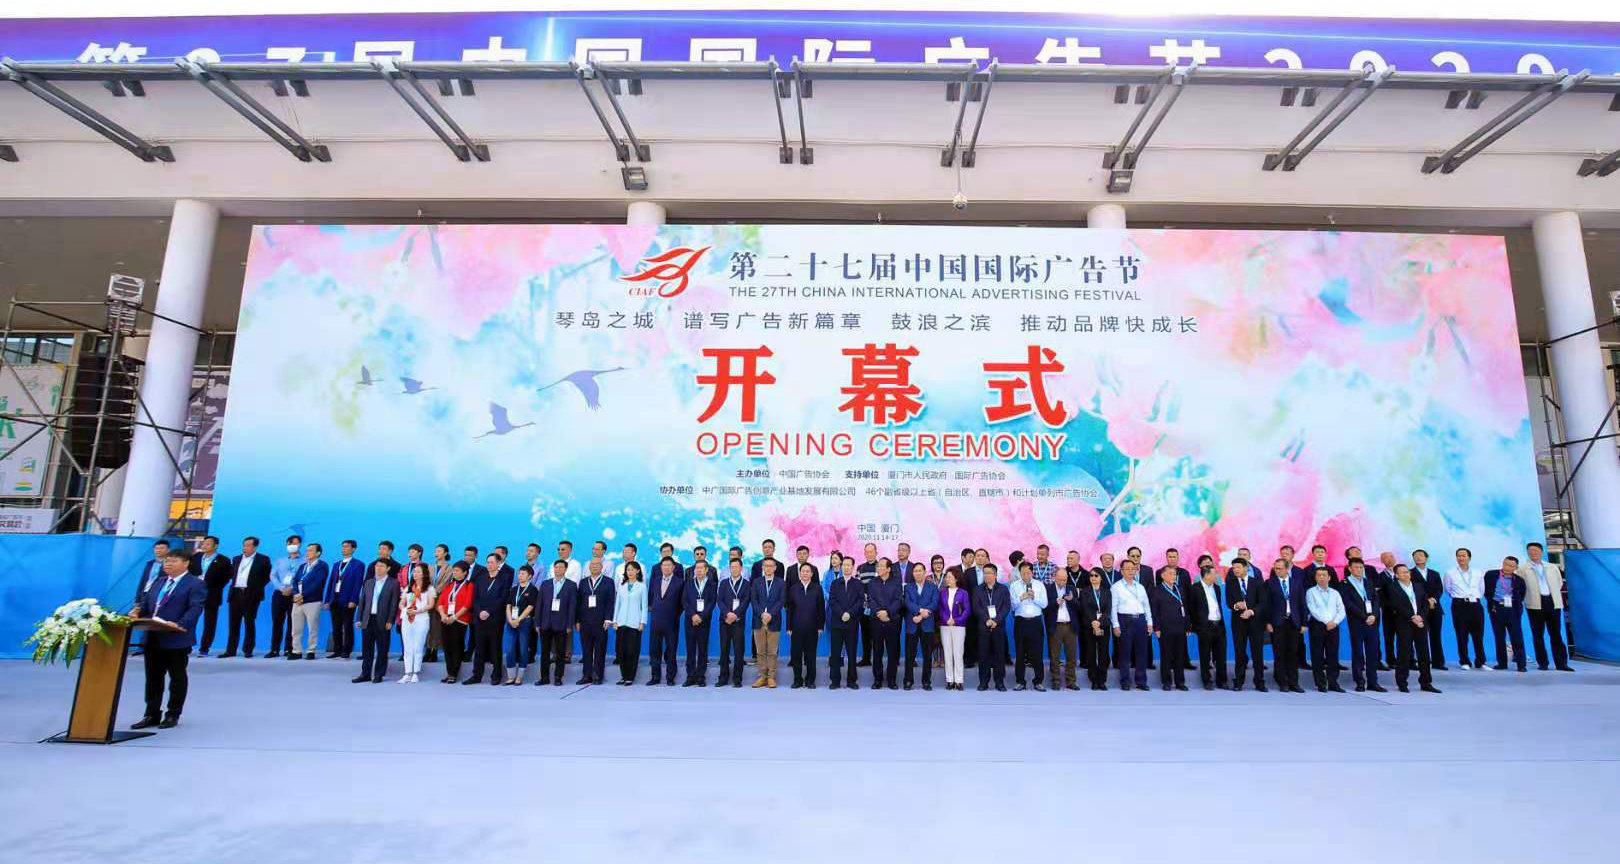 琴島之城，譜寫廣告新篇章；鼓浪之濱，推動品牌快成長第27屆中國國際廣告節在廈門開幕